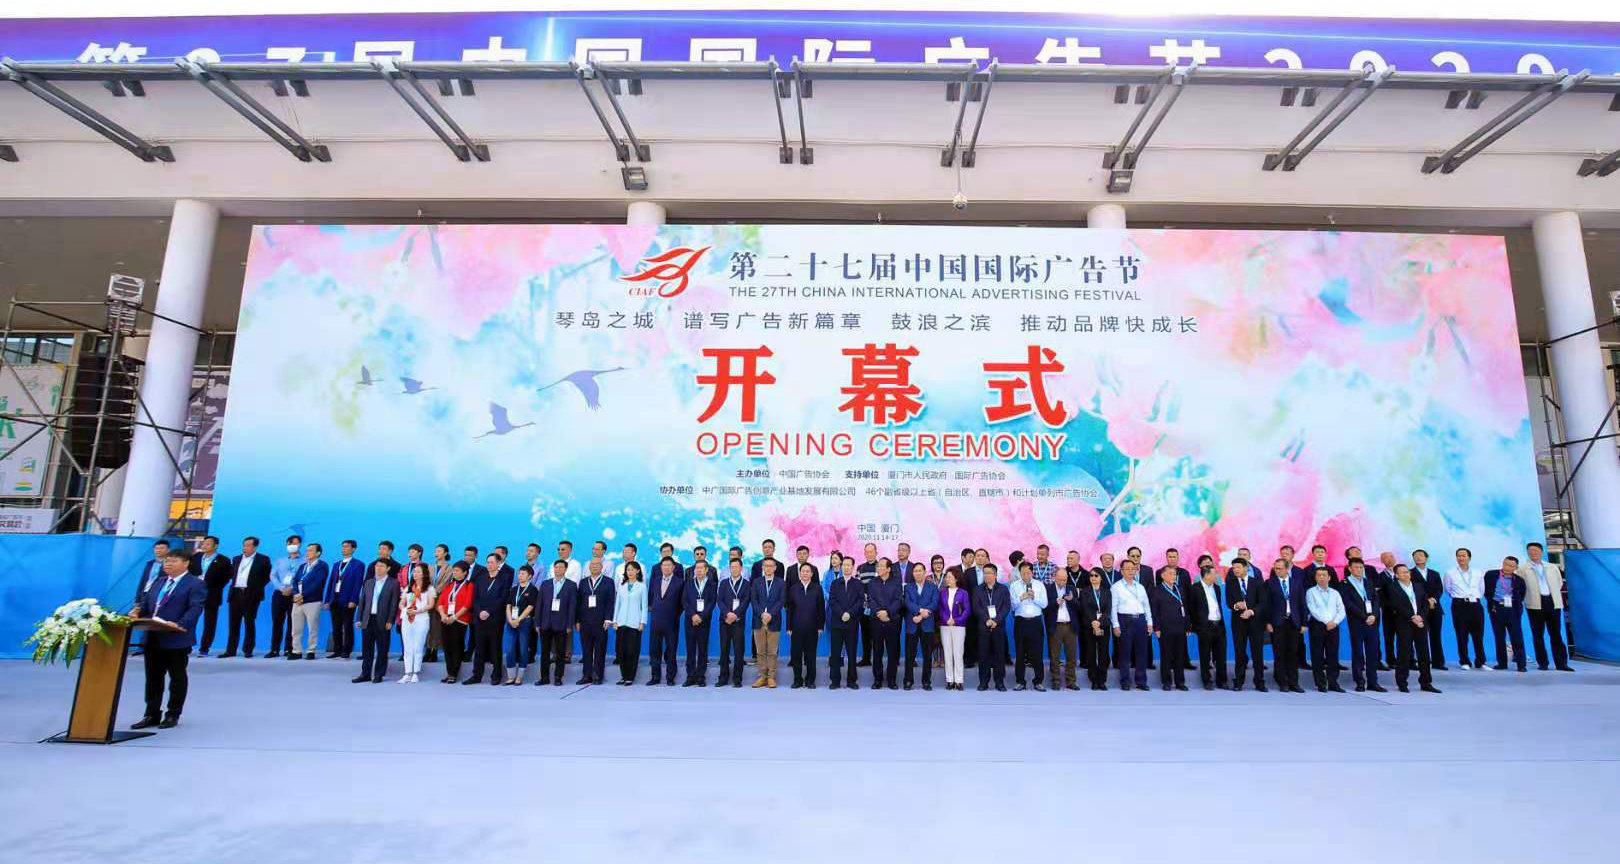 琴島之城，譜寫廣告新篇章；鼓浪之濱，推動品牌快成長第27屆中國國際廣告節在廈門開幕